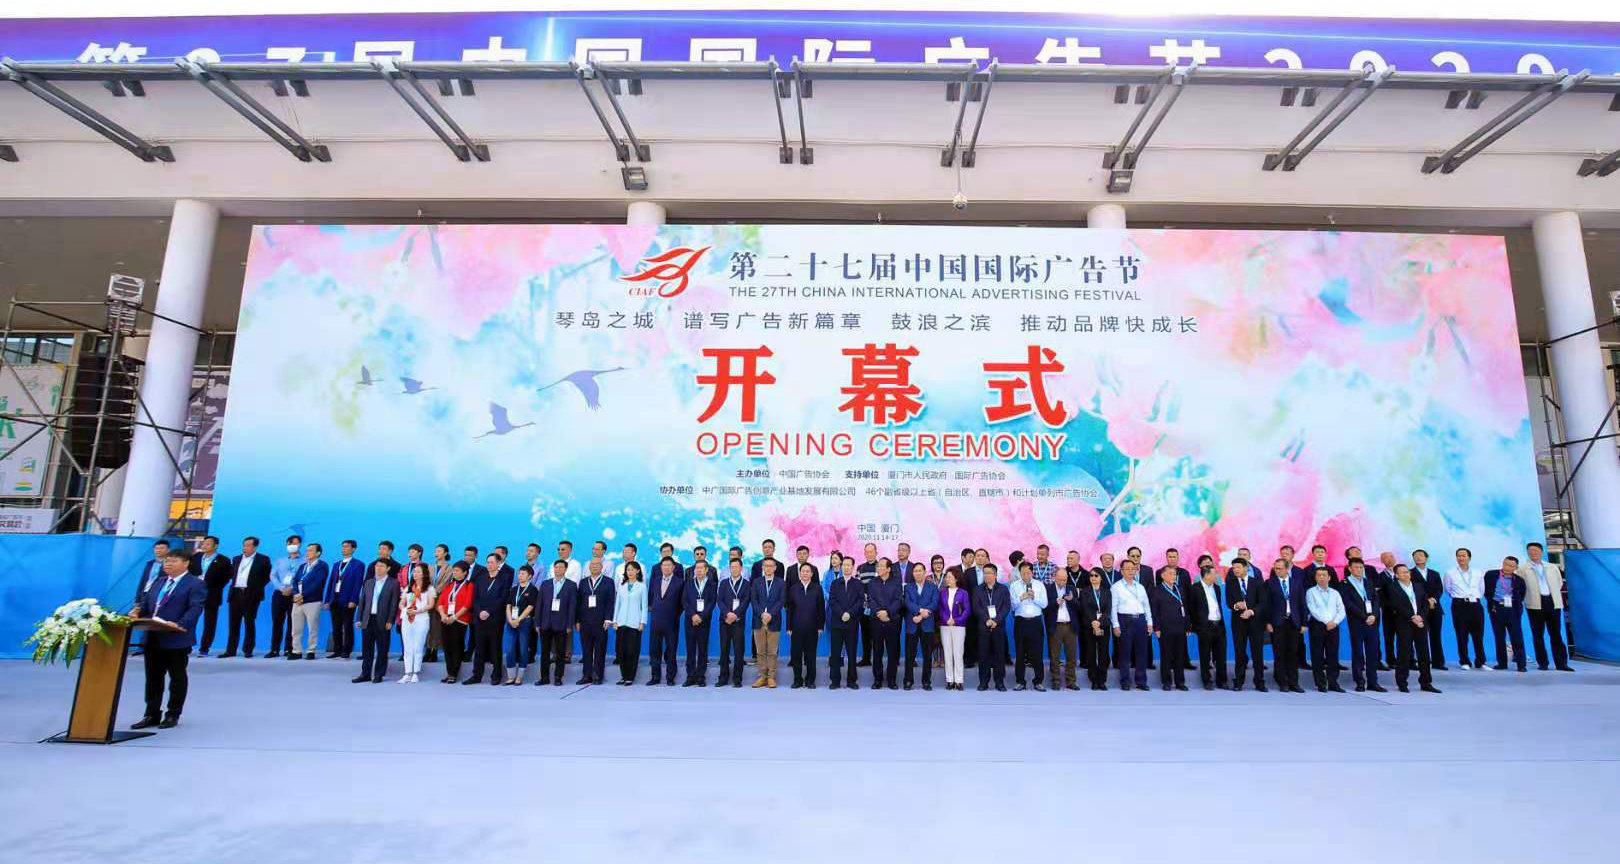 琴島之城，譜寫廣告新篇章；鼓浪之濱，推動品牌快成長第27屆中國國際廣告節在廈門開幕